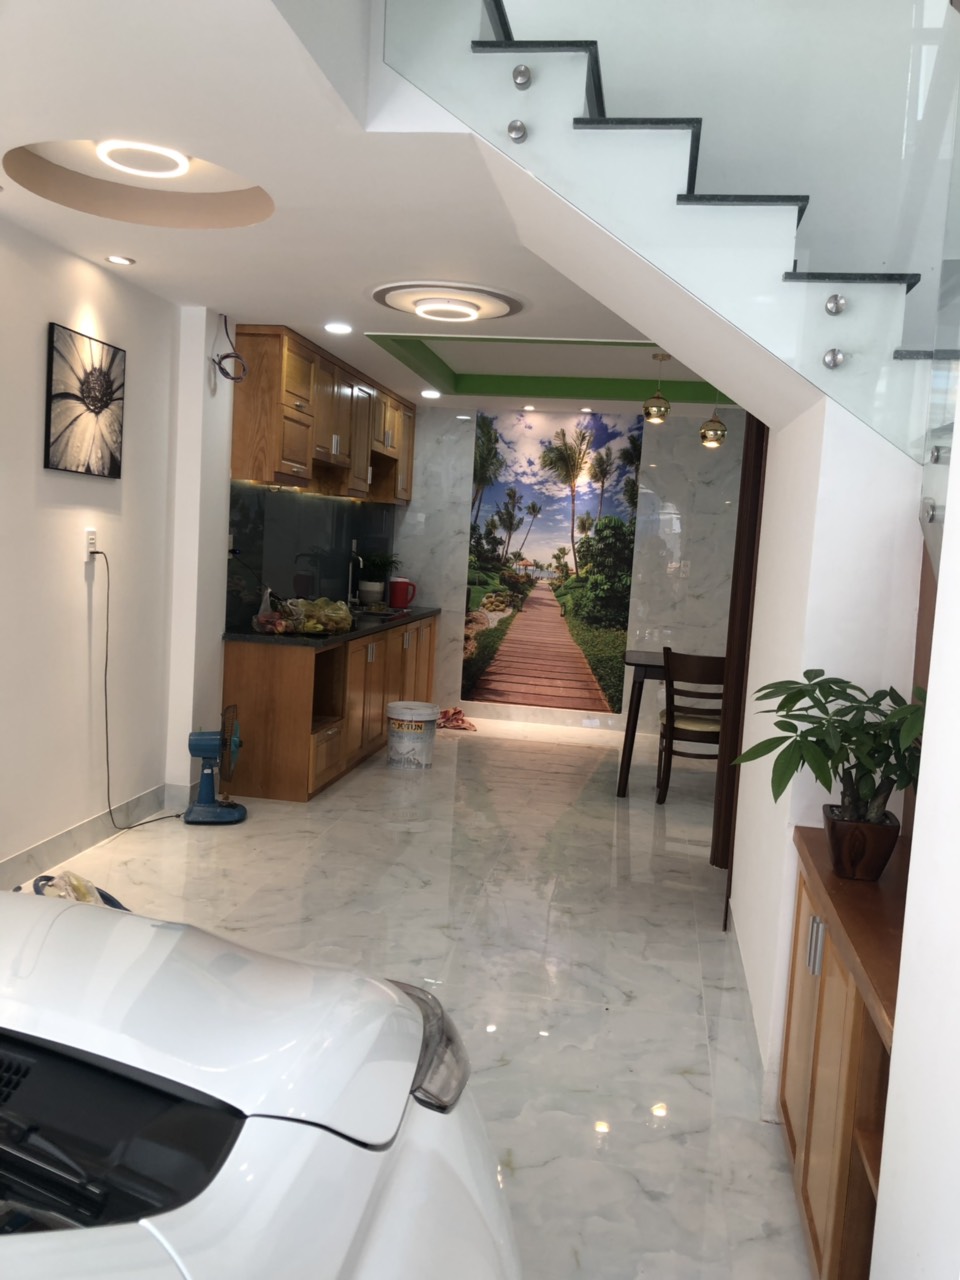 Bán nhà mới, hoàn công hoàn chỉnh đẹp bậc nhất quận Gò Vấp, tp Hồ Chí Minh
Liên hệ:  0909644323, 10492563